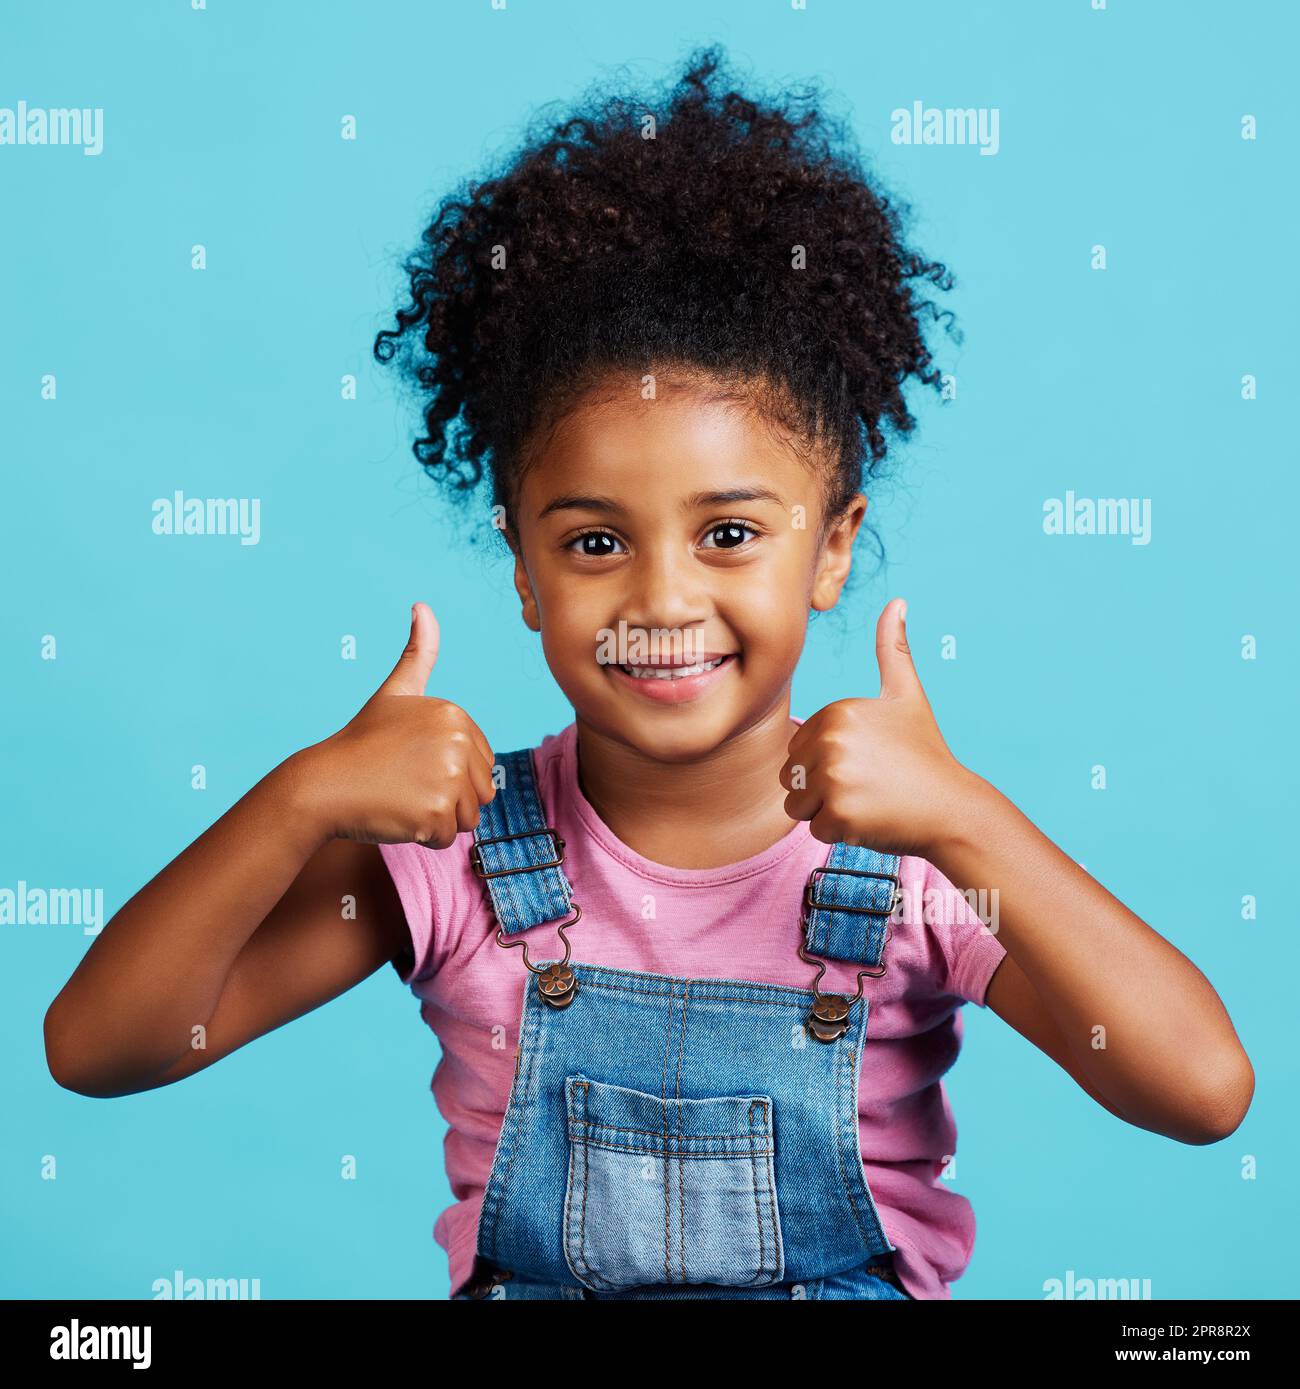 Ein entzückendes kleines Mädchen, das Daumen nach oben zeigt, während es vor einem blauen Hintergrund steht. Stockfoto